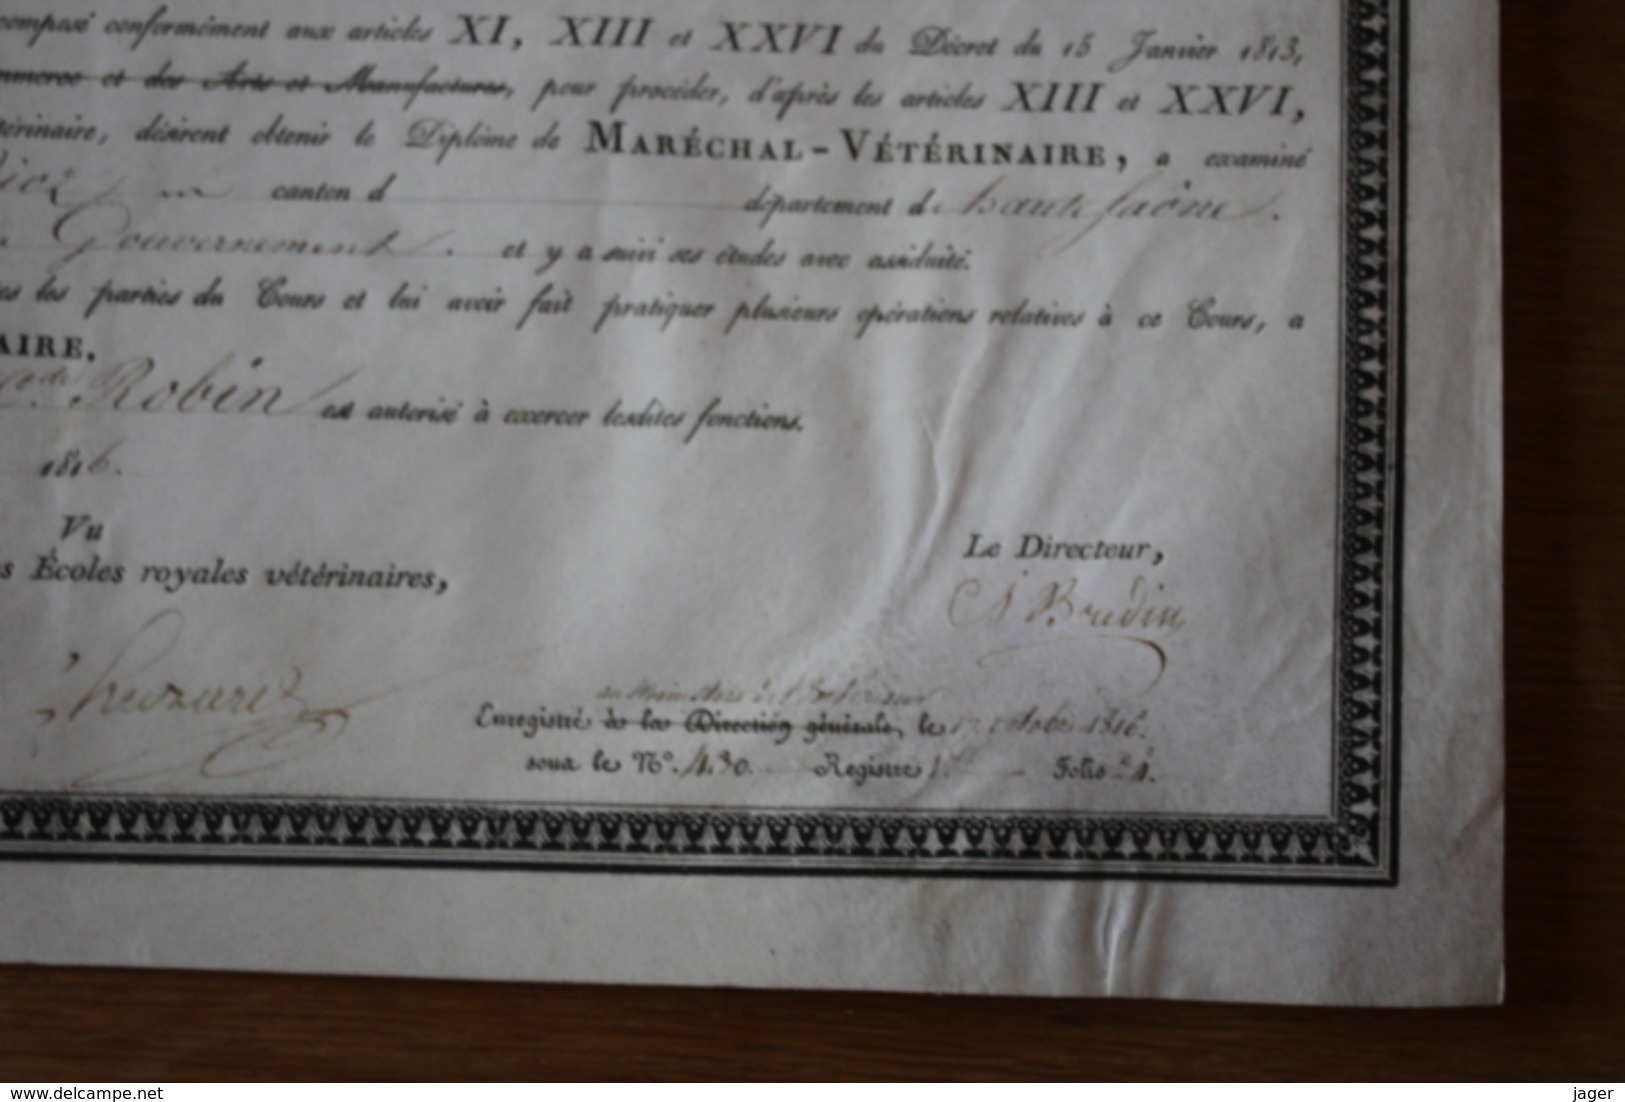 Diplome sur Velin 1816  Ecole royale d'economie rurale et vétérinaire de LYON